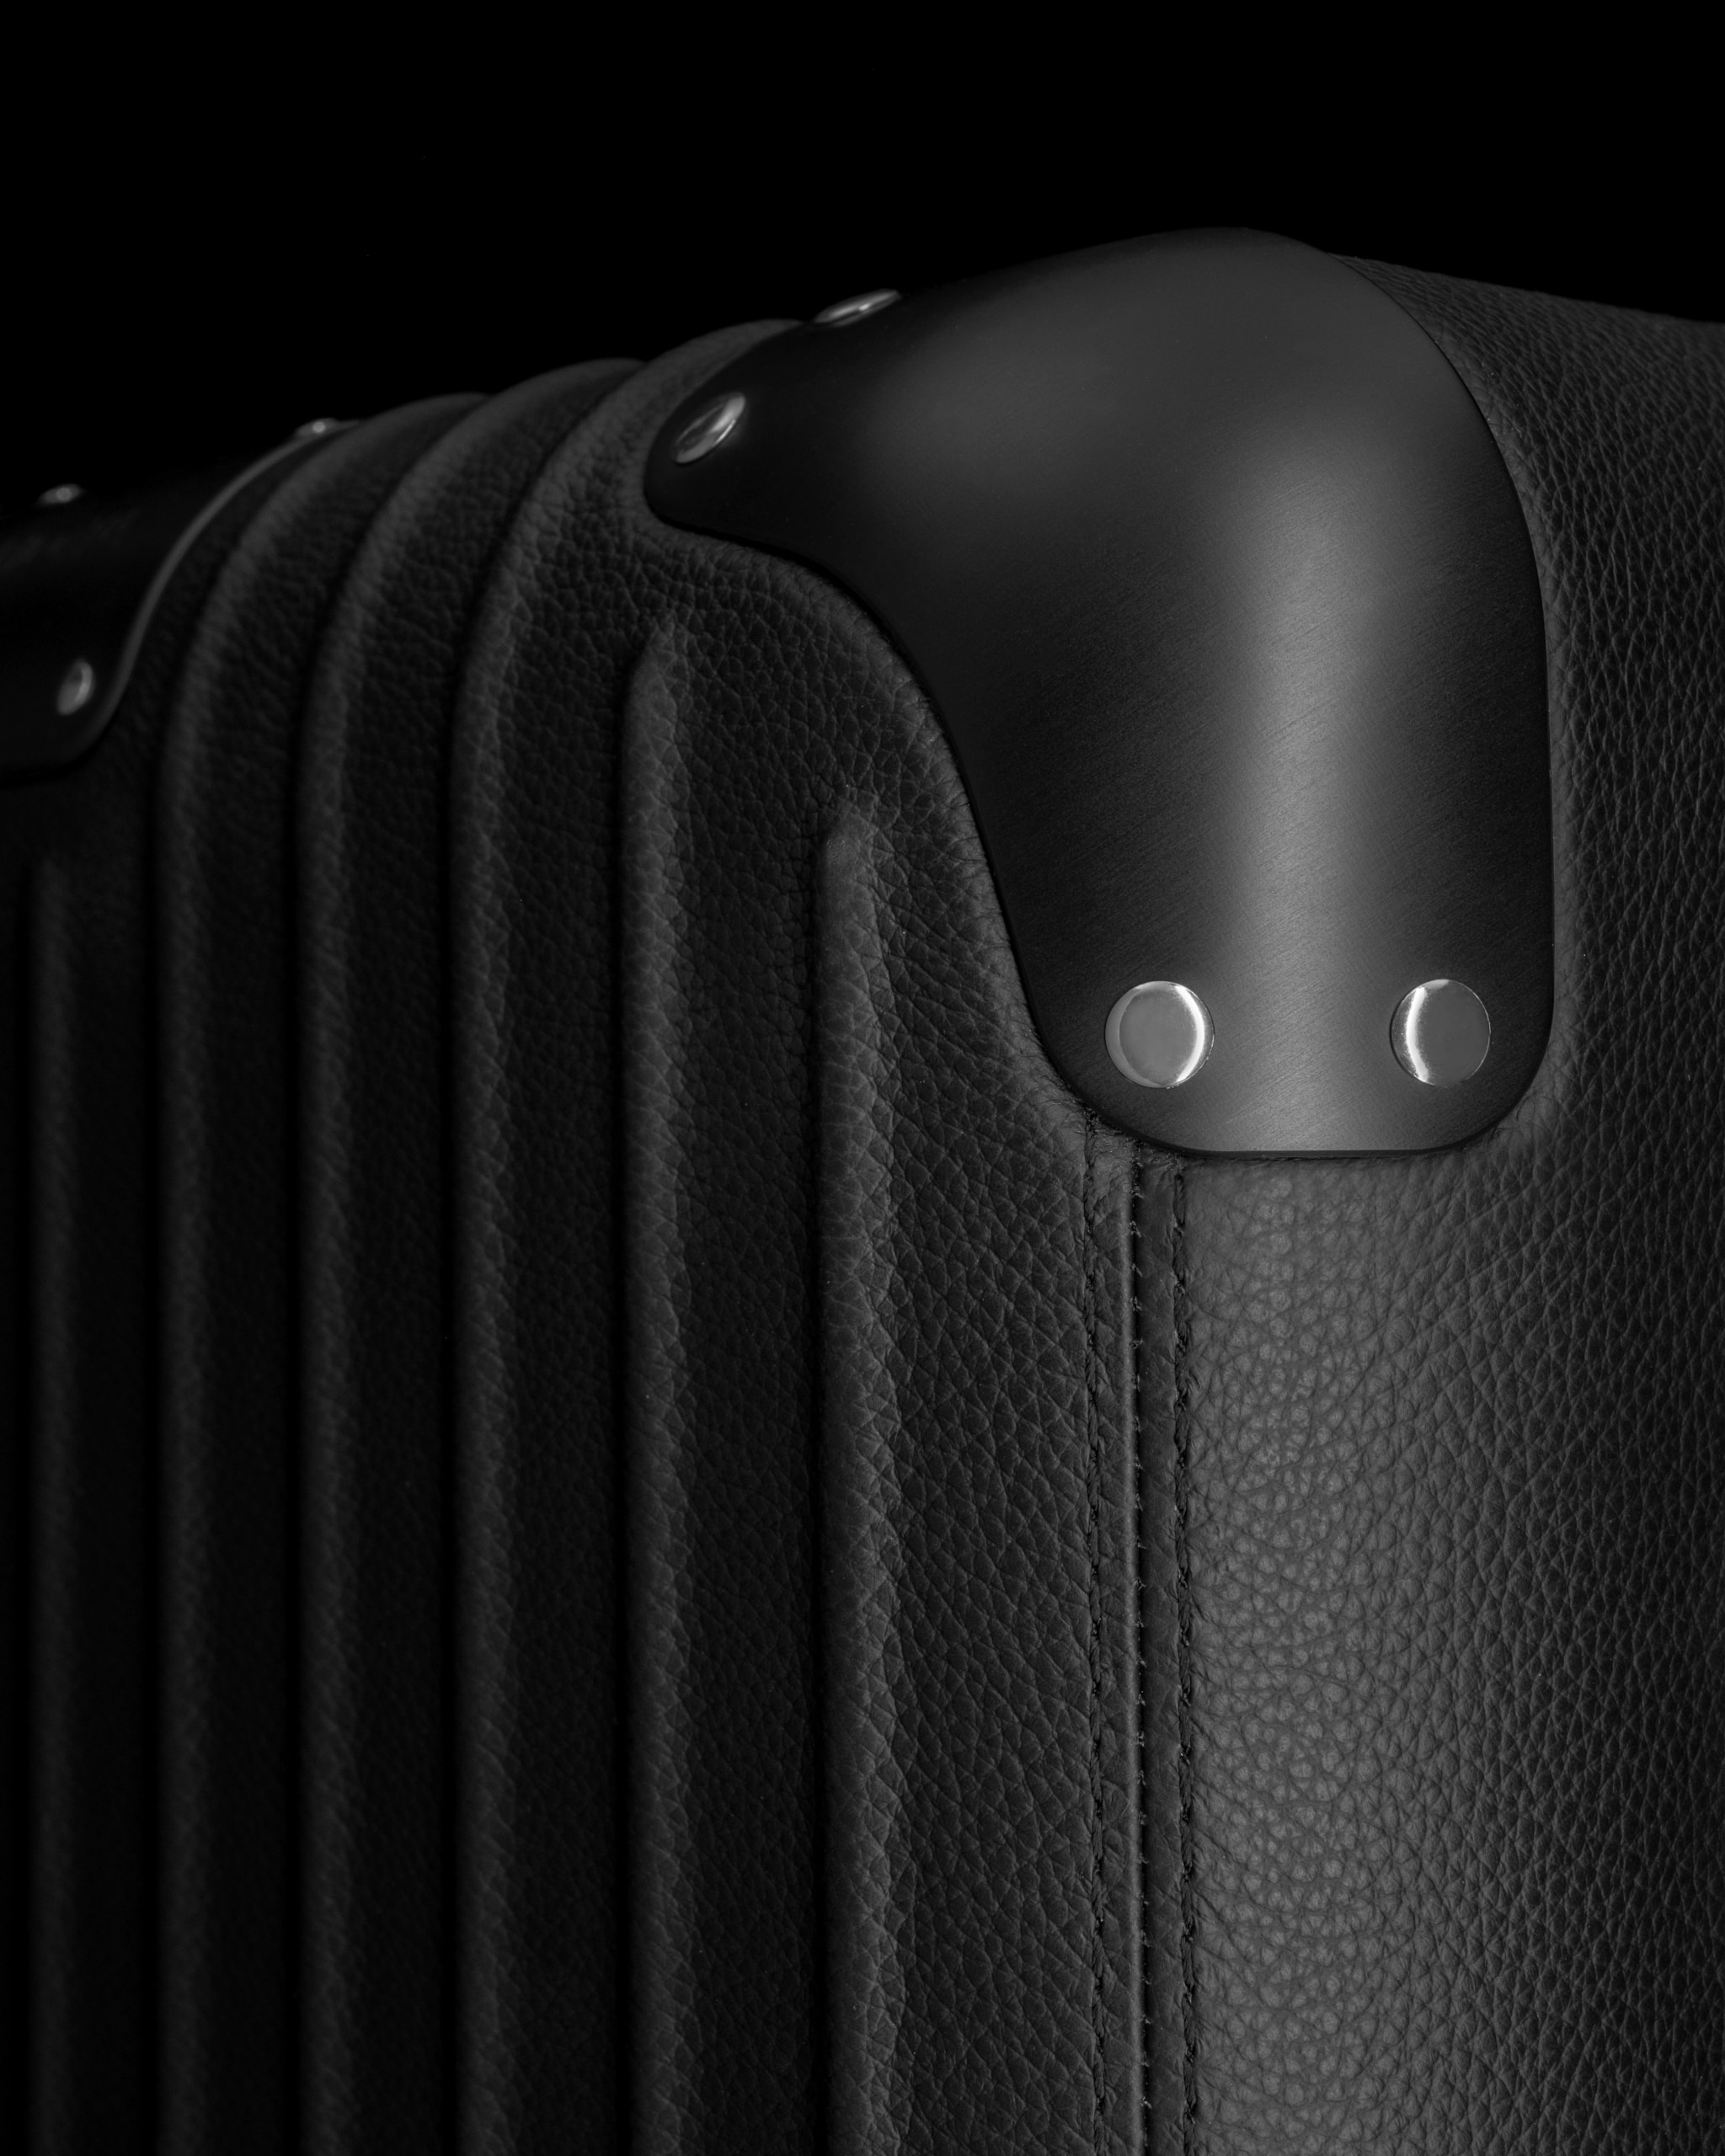 RIMOWA 正式推出全新皮革行李箱系列